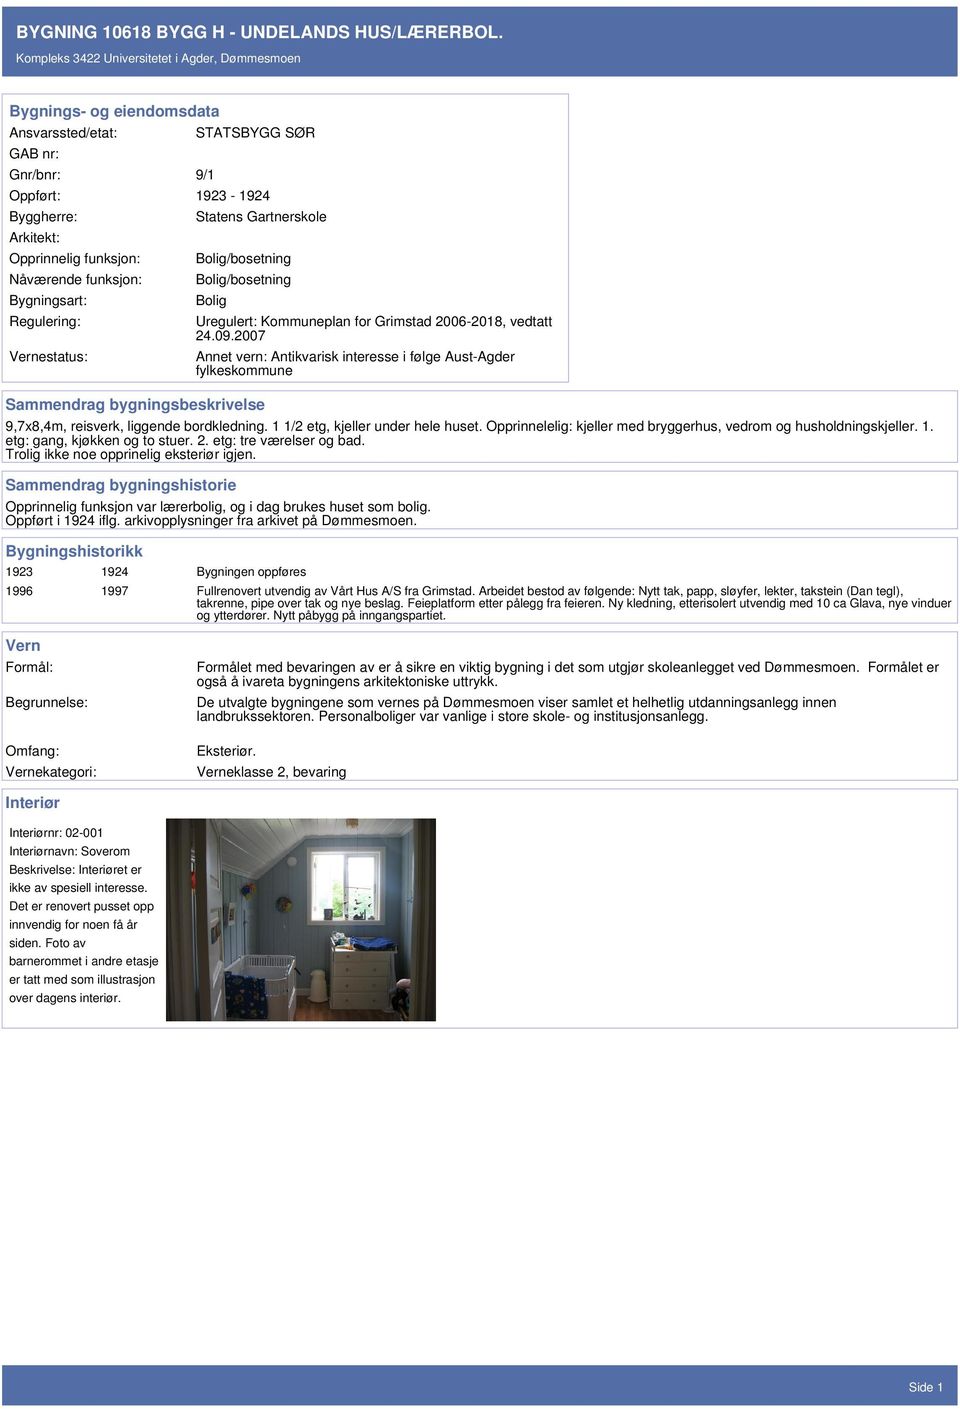 Gartnerskole Bolig/bosetning Bolig/bosetning Bolig Sammendrag bygningsbeskrivelse Uregulert: Kommuneplan for Grimstad 2006-2018, vedtatt 24.09.